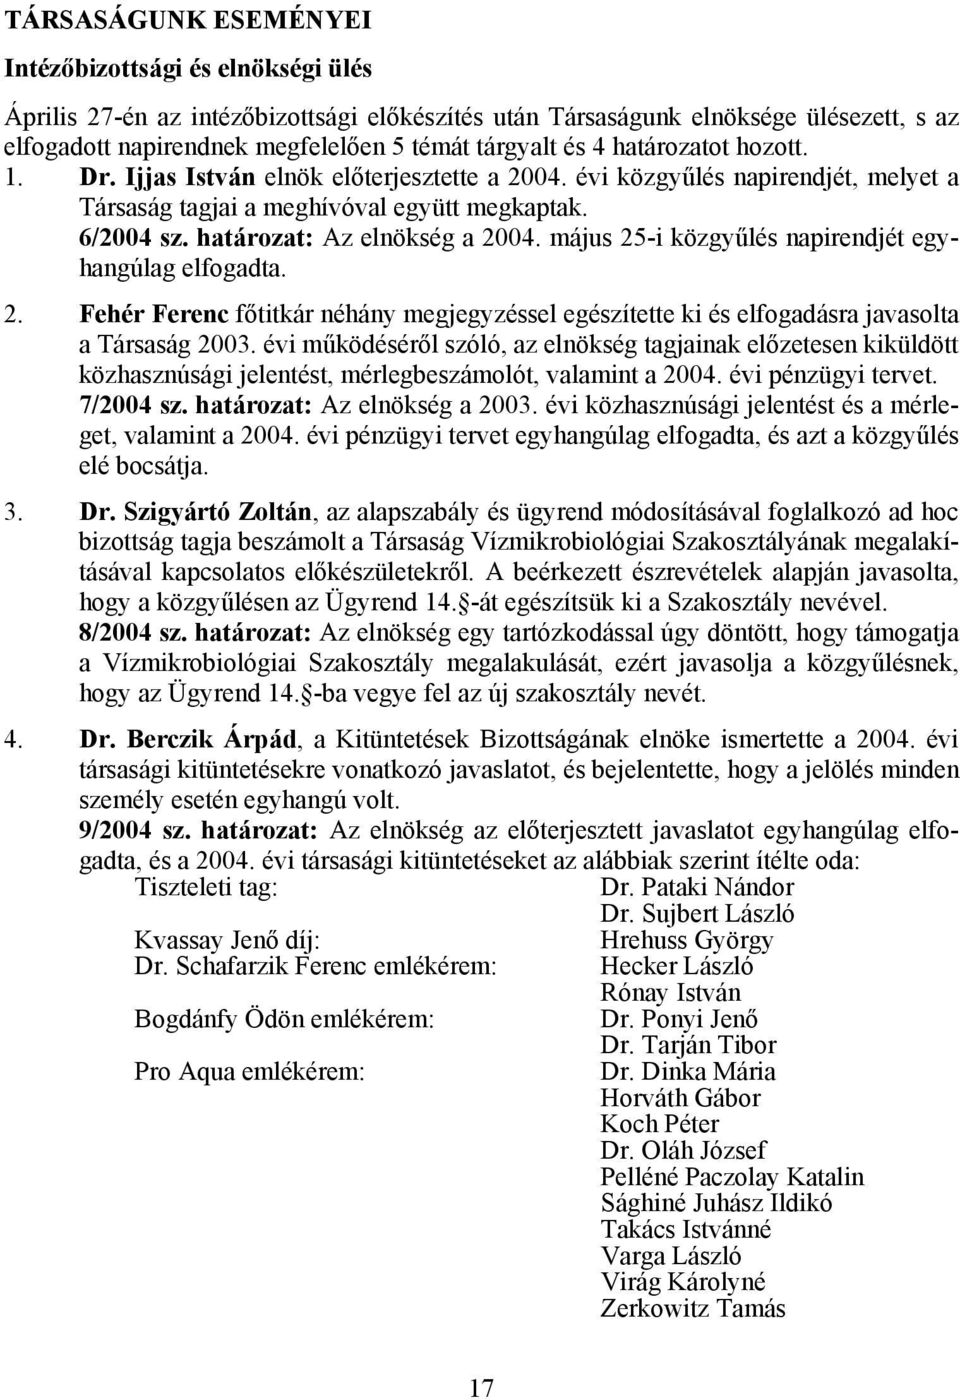 május 25-i közgyűlés napirendjét egyhangúlag elfogadta. 2. Fehér Ferenc főtitkár néhány megjegyzéssel egészítette ki és elfogadásra javasolta a Társaság 2003.